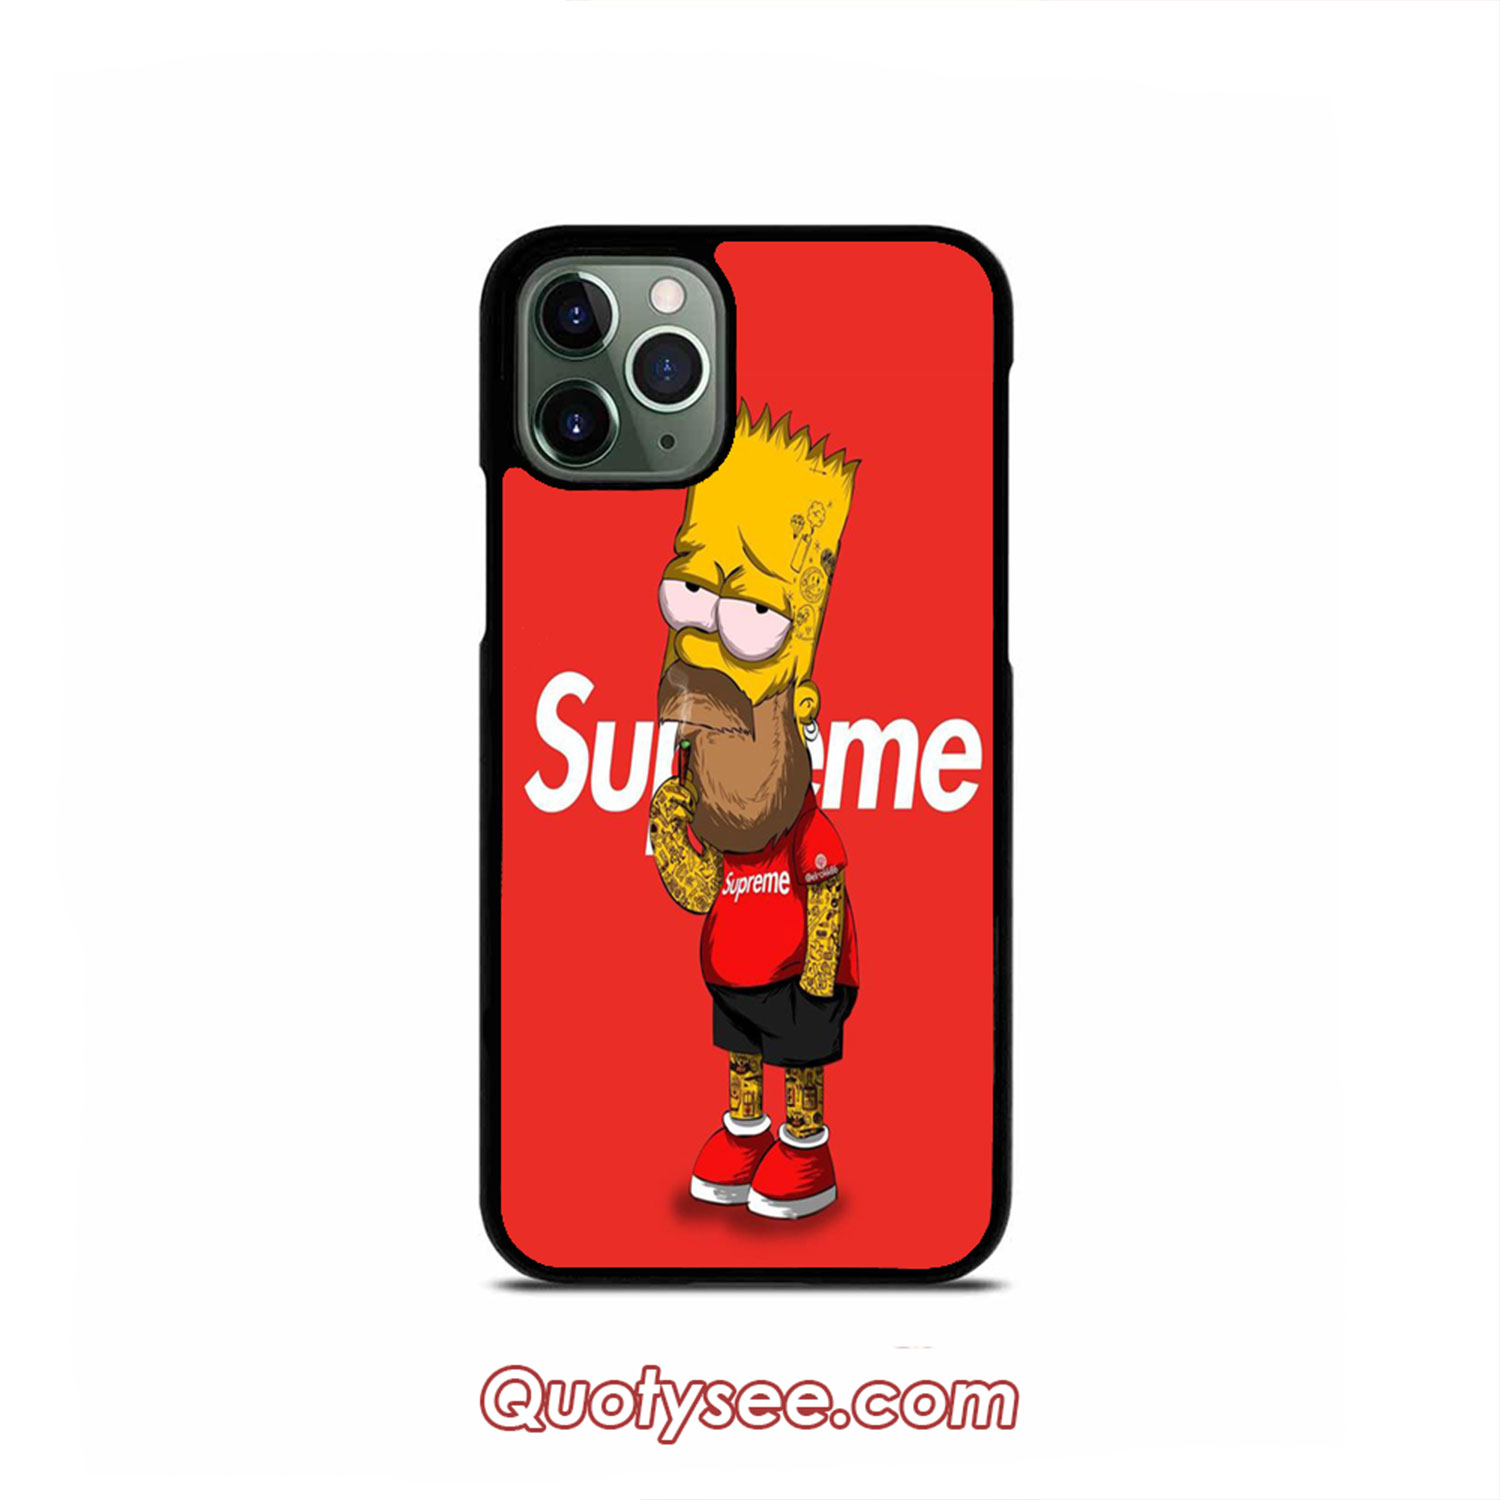 Supreme iPhone 11 Pro Case  Iphone 11 pro case, Iphone 11, Iphone